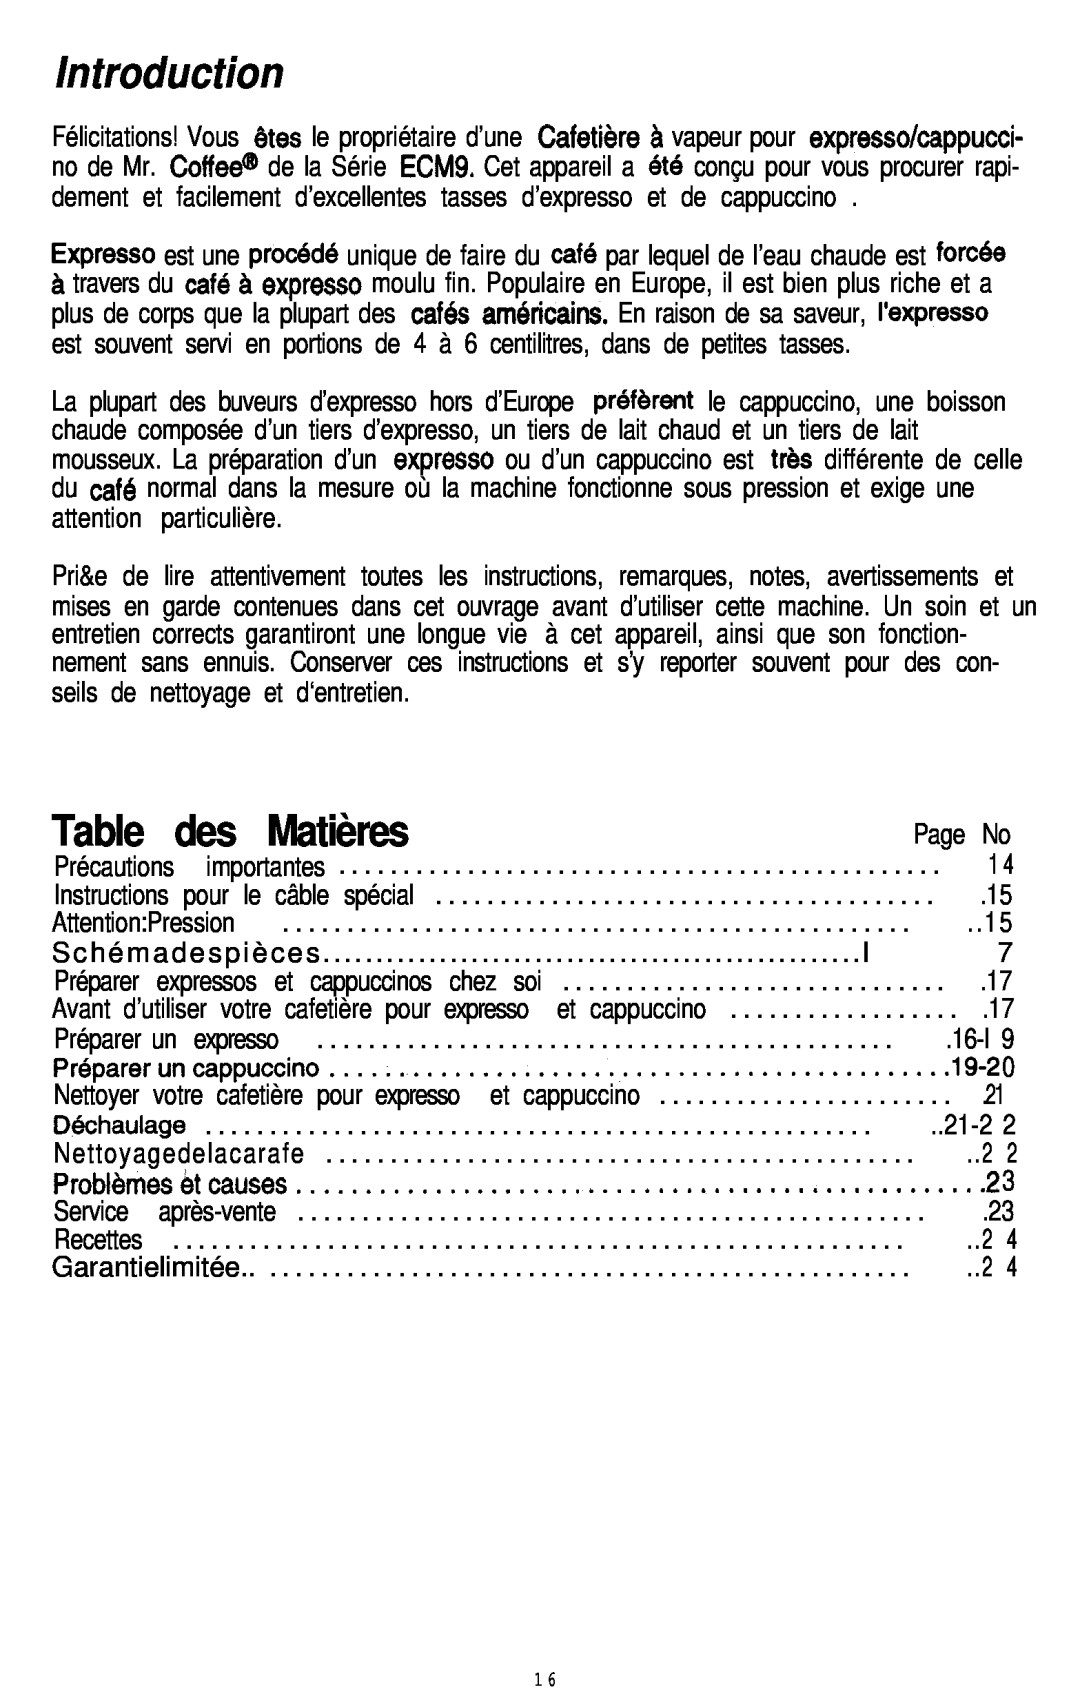 Mr. Coffee ECM9 manual Table des Matières, Introduction, Page No, 16-l, 19-2 